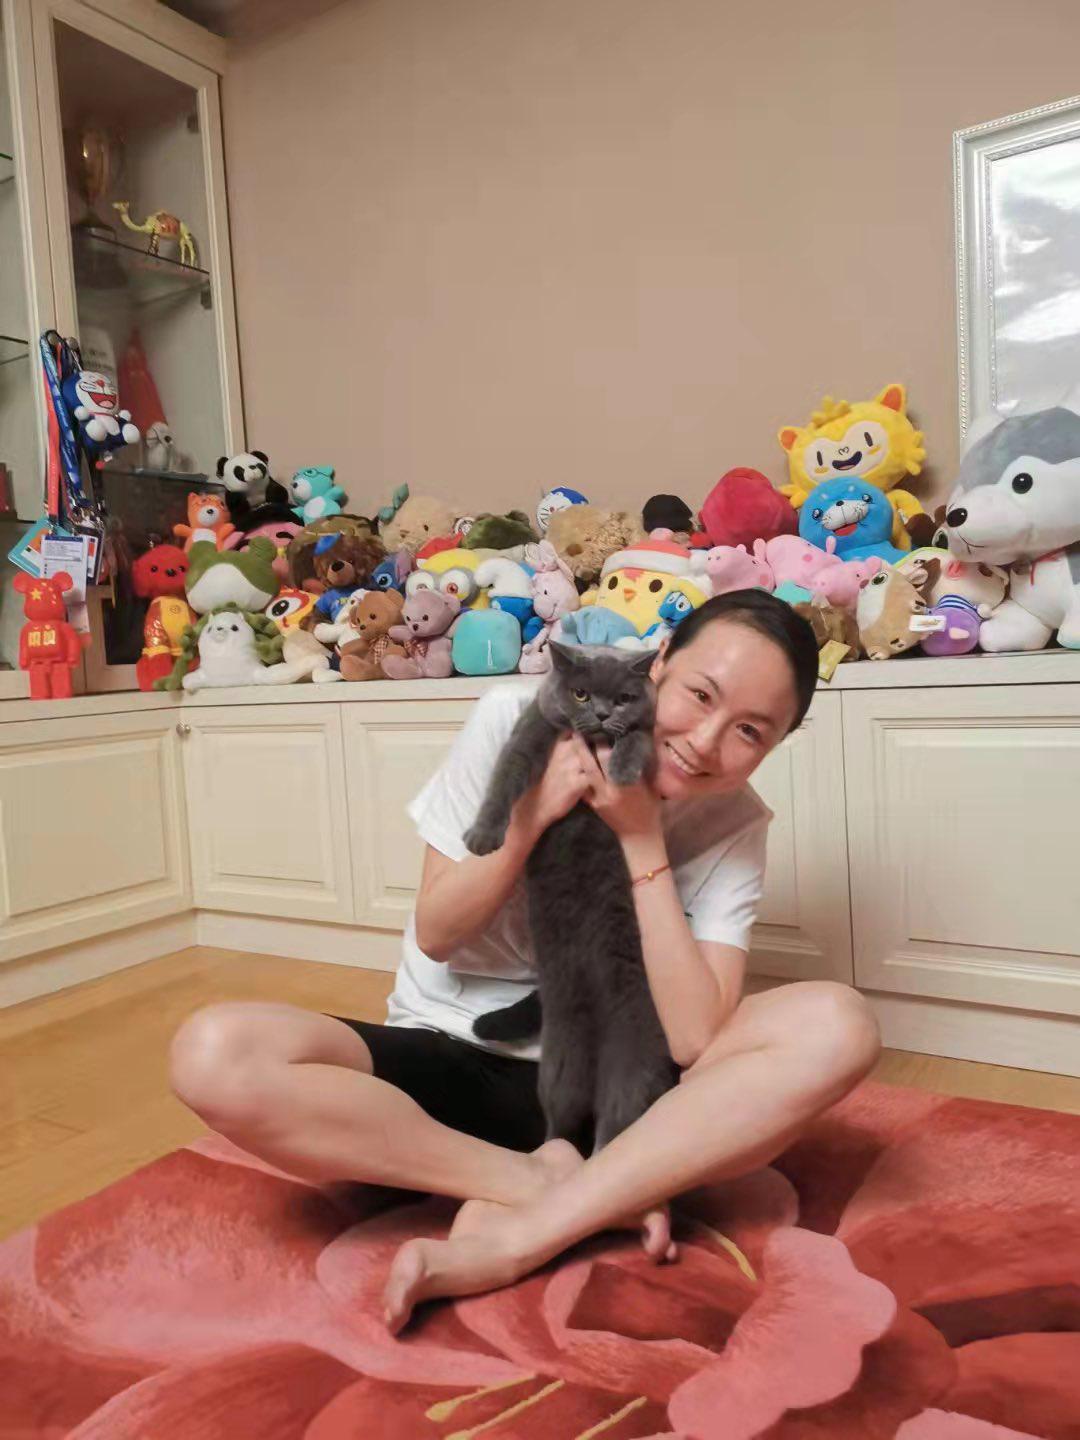 $!Periodistas aseguran que tenista Peng Shuai ‘está en su casa’ y publican fotos suyas